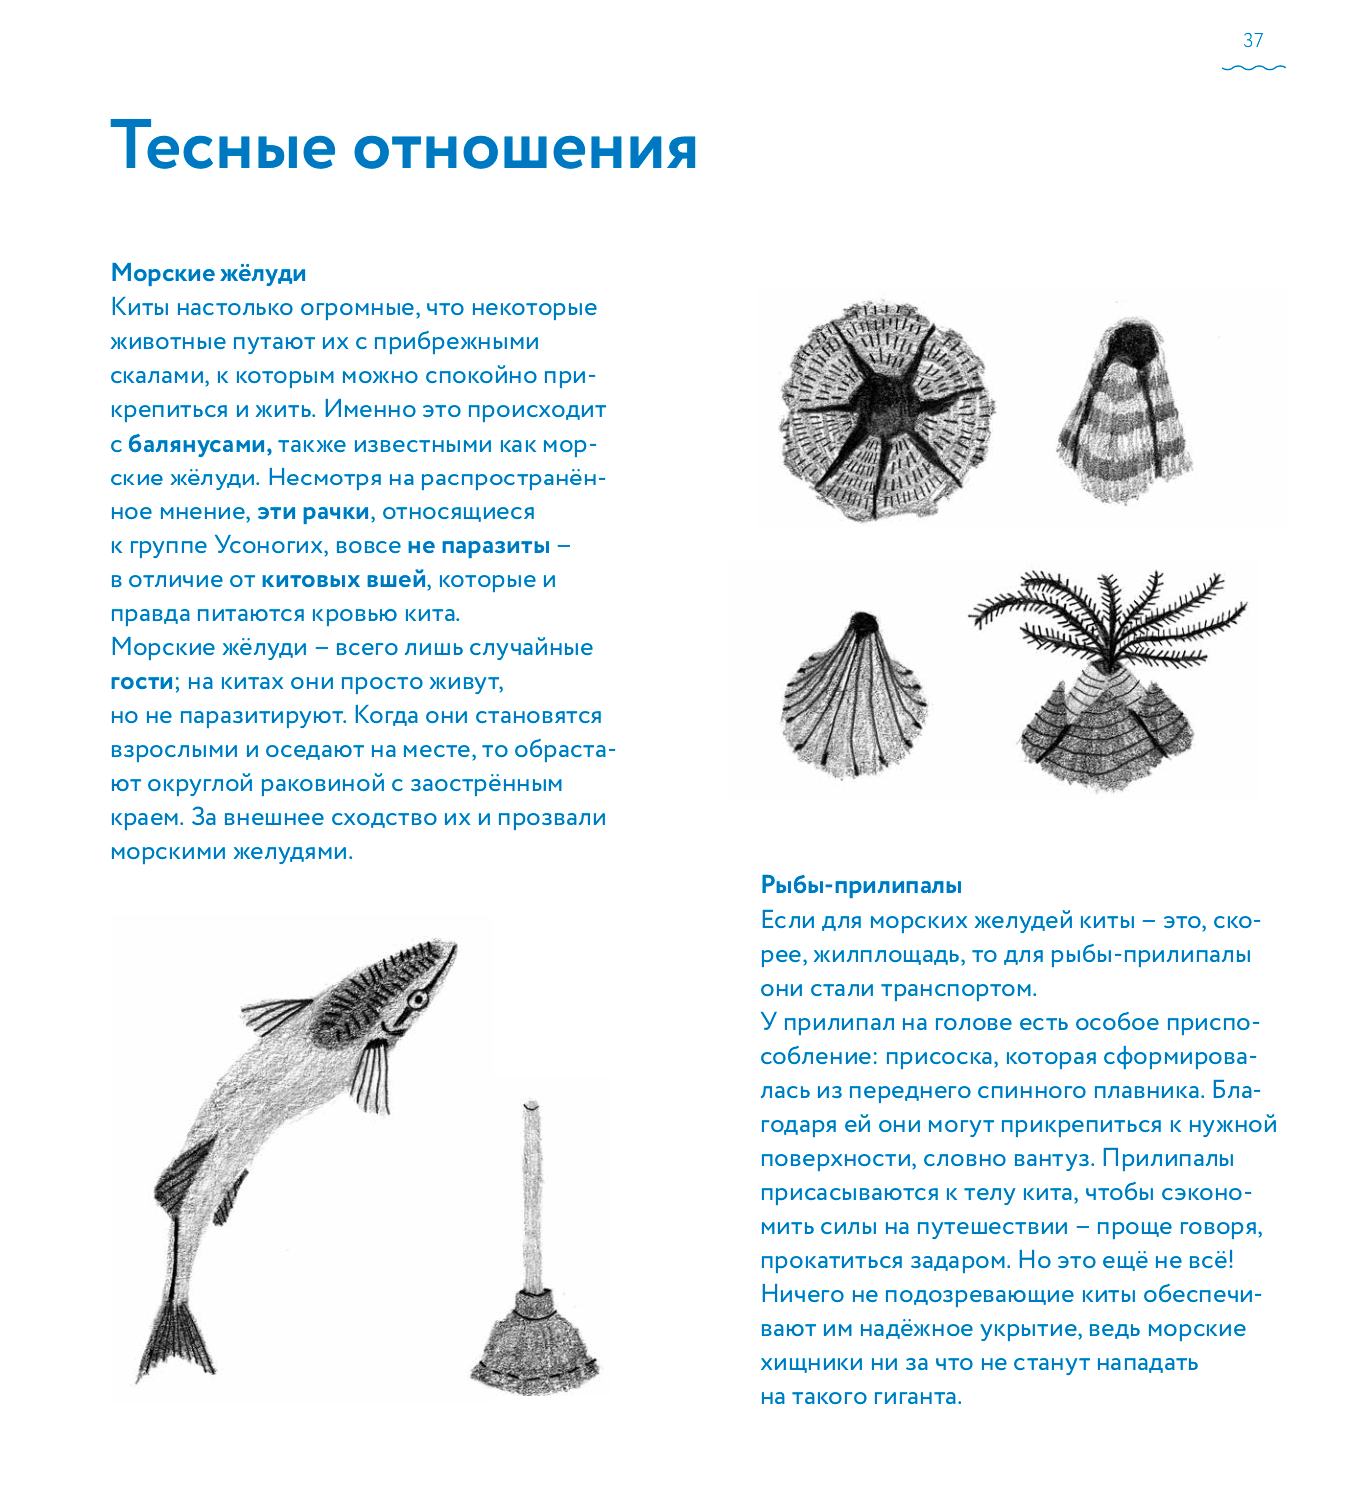 Иллюстрации из «Книги о китах» Андреа Антинори